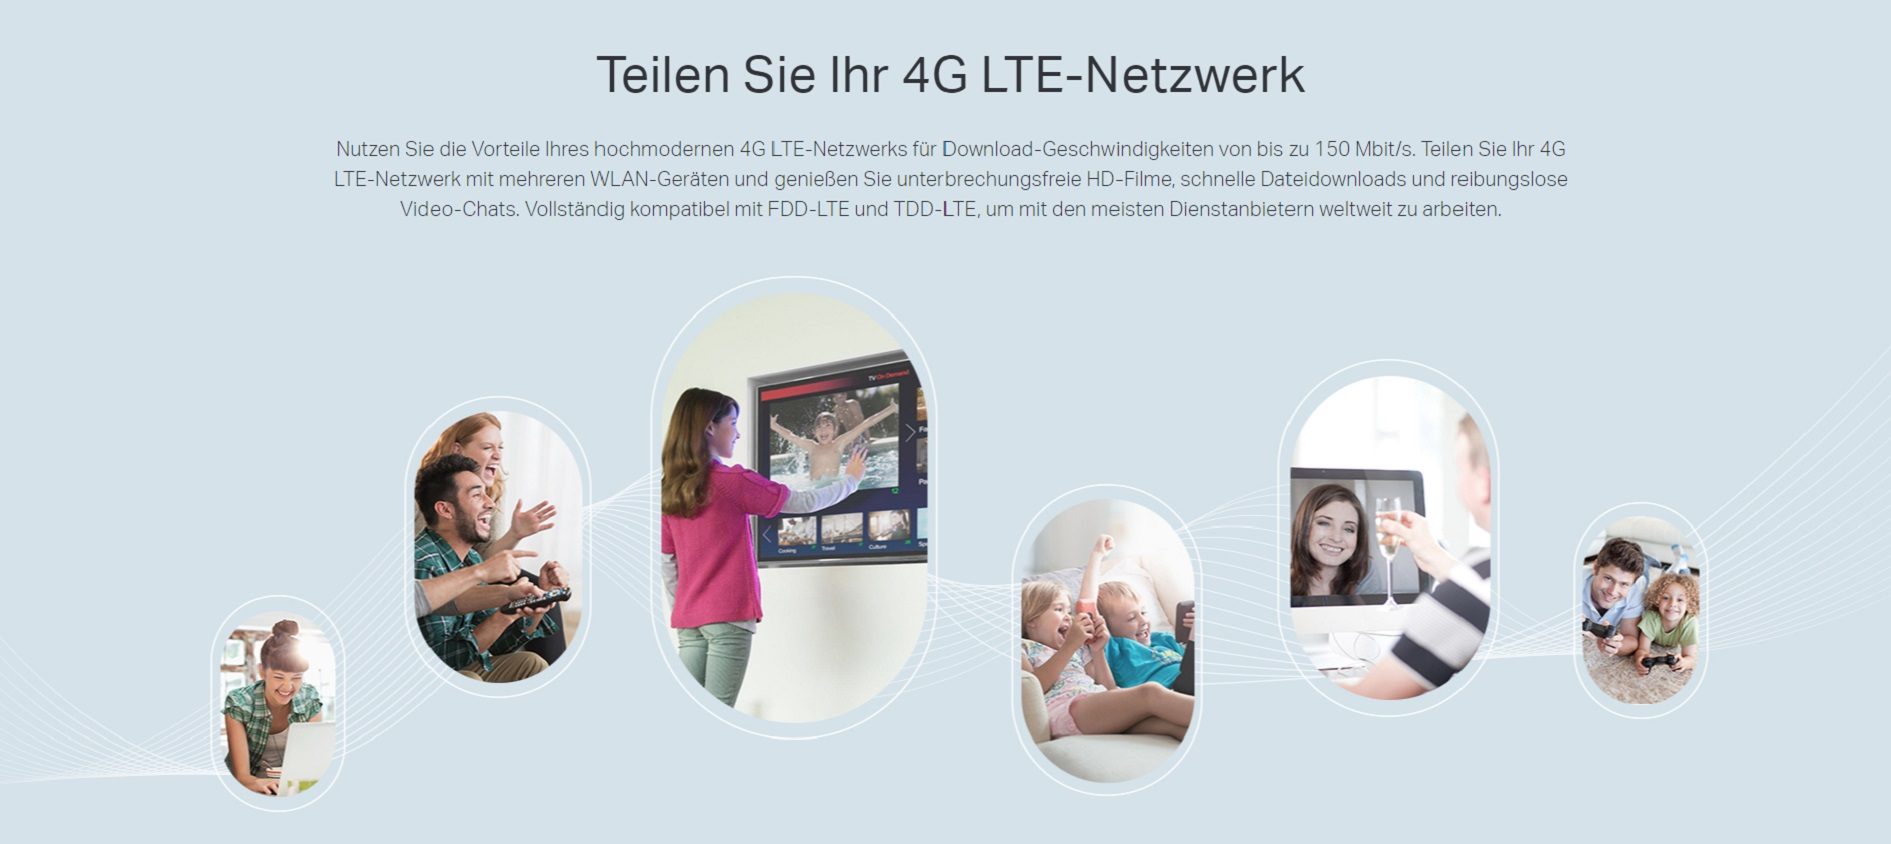 Teilen Sie Ihr 4G LTE-Netzwerk